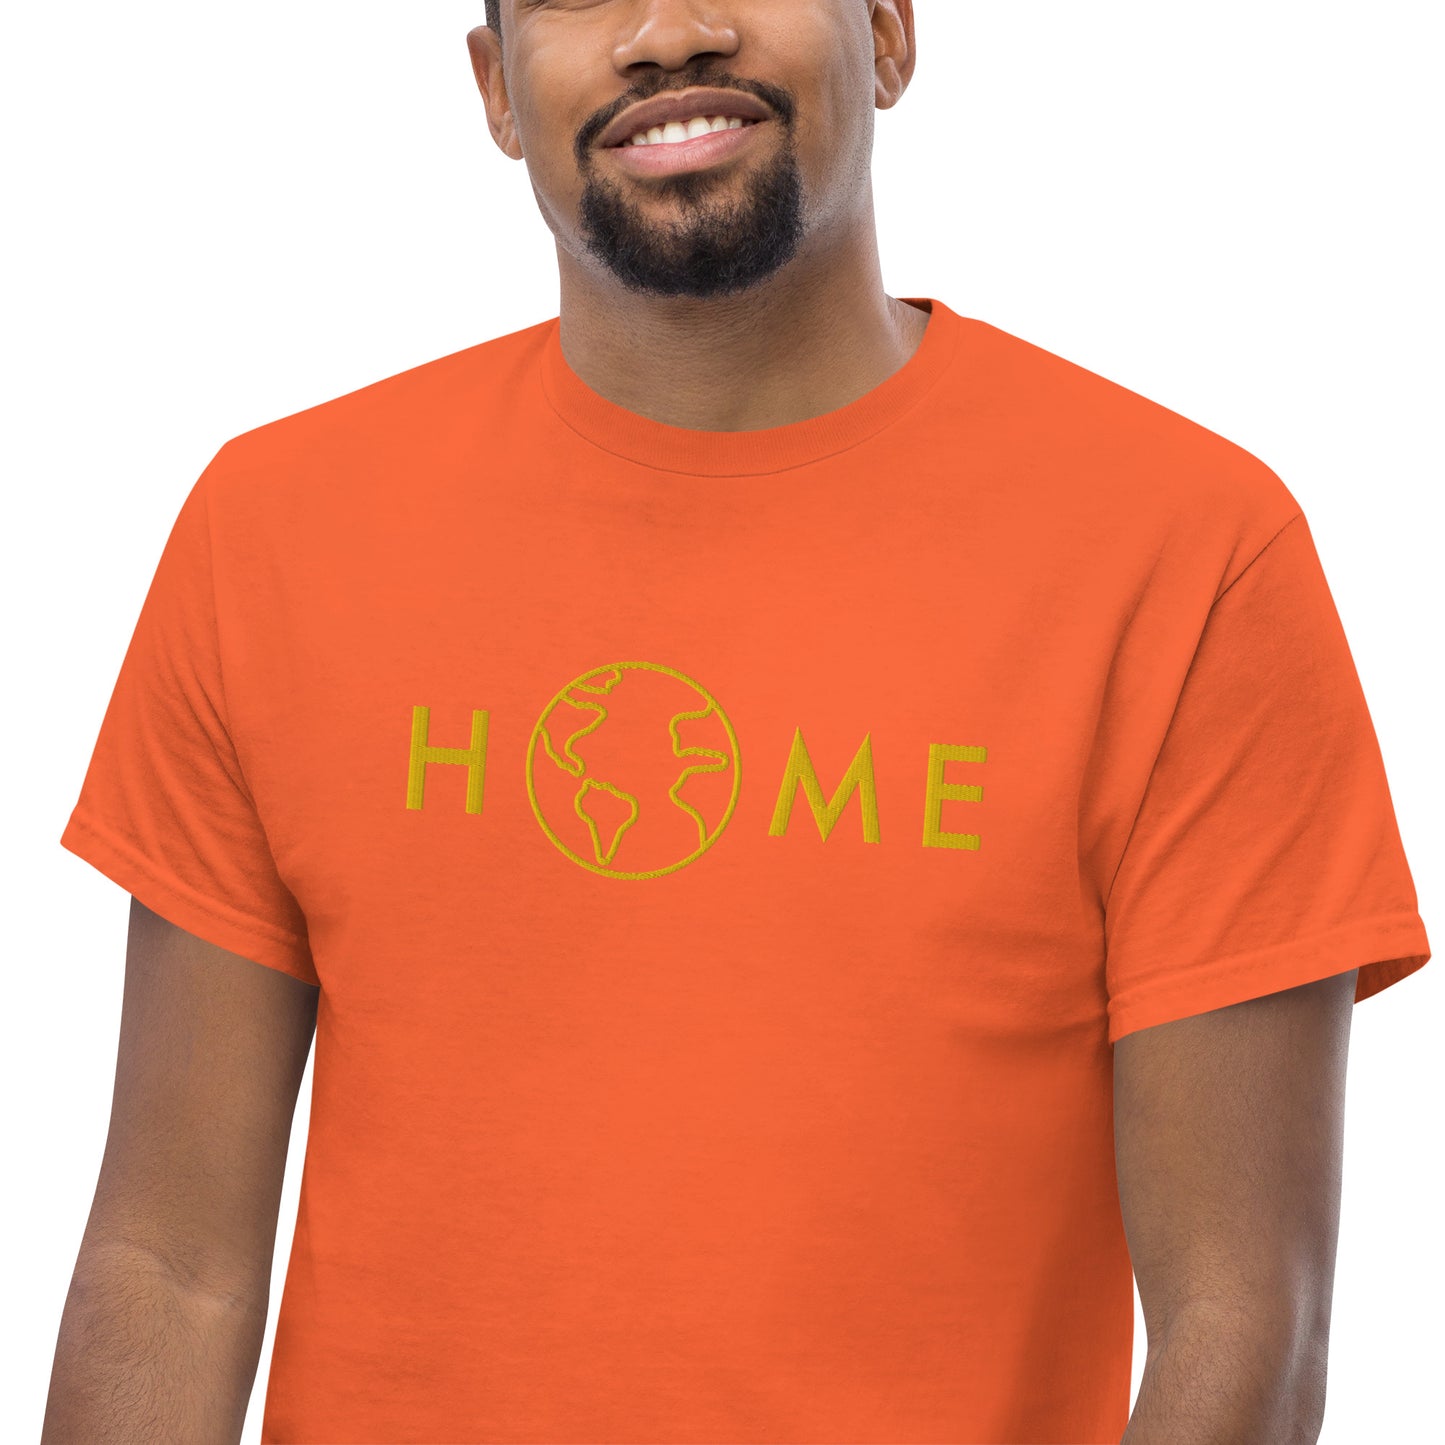 "Home" men's t-shirt